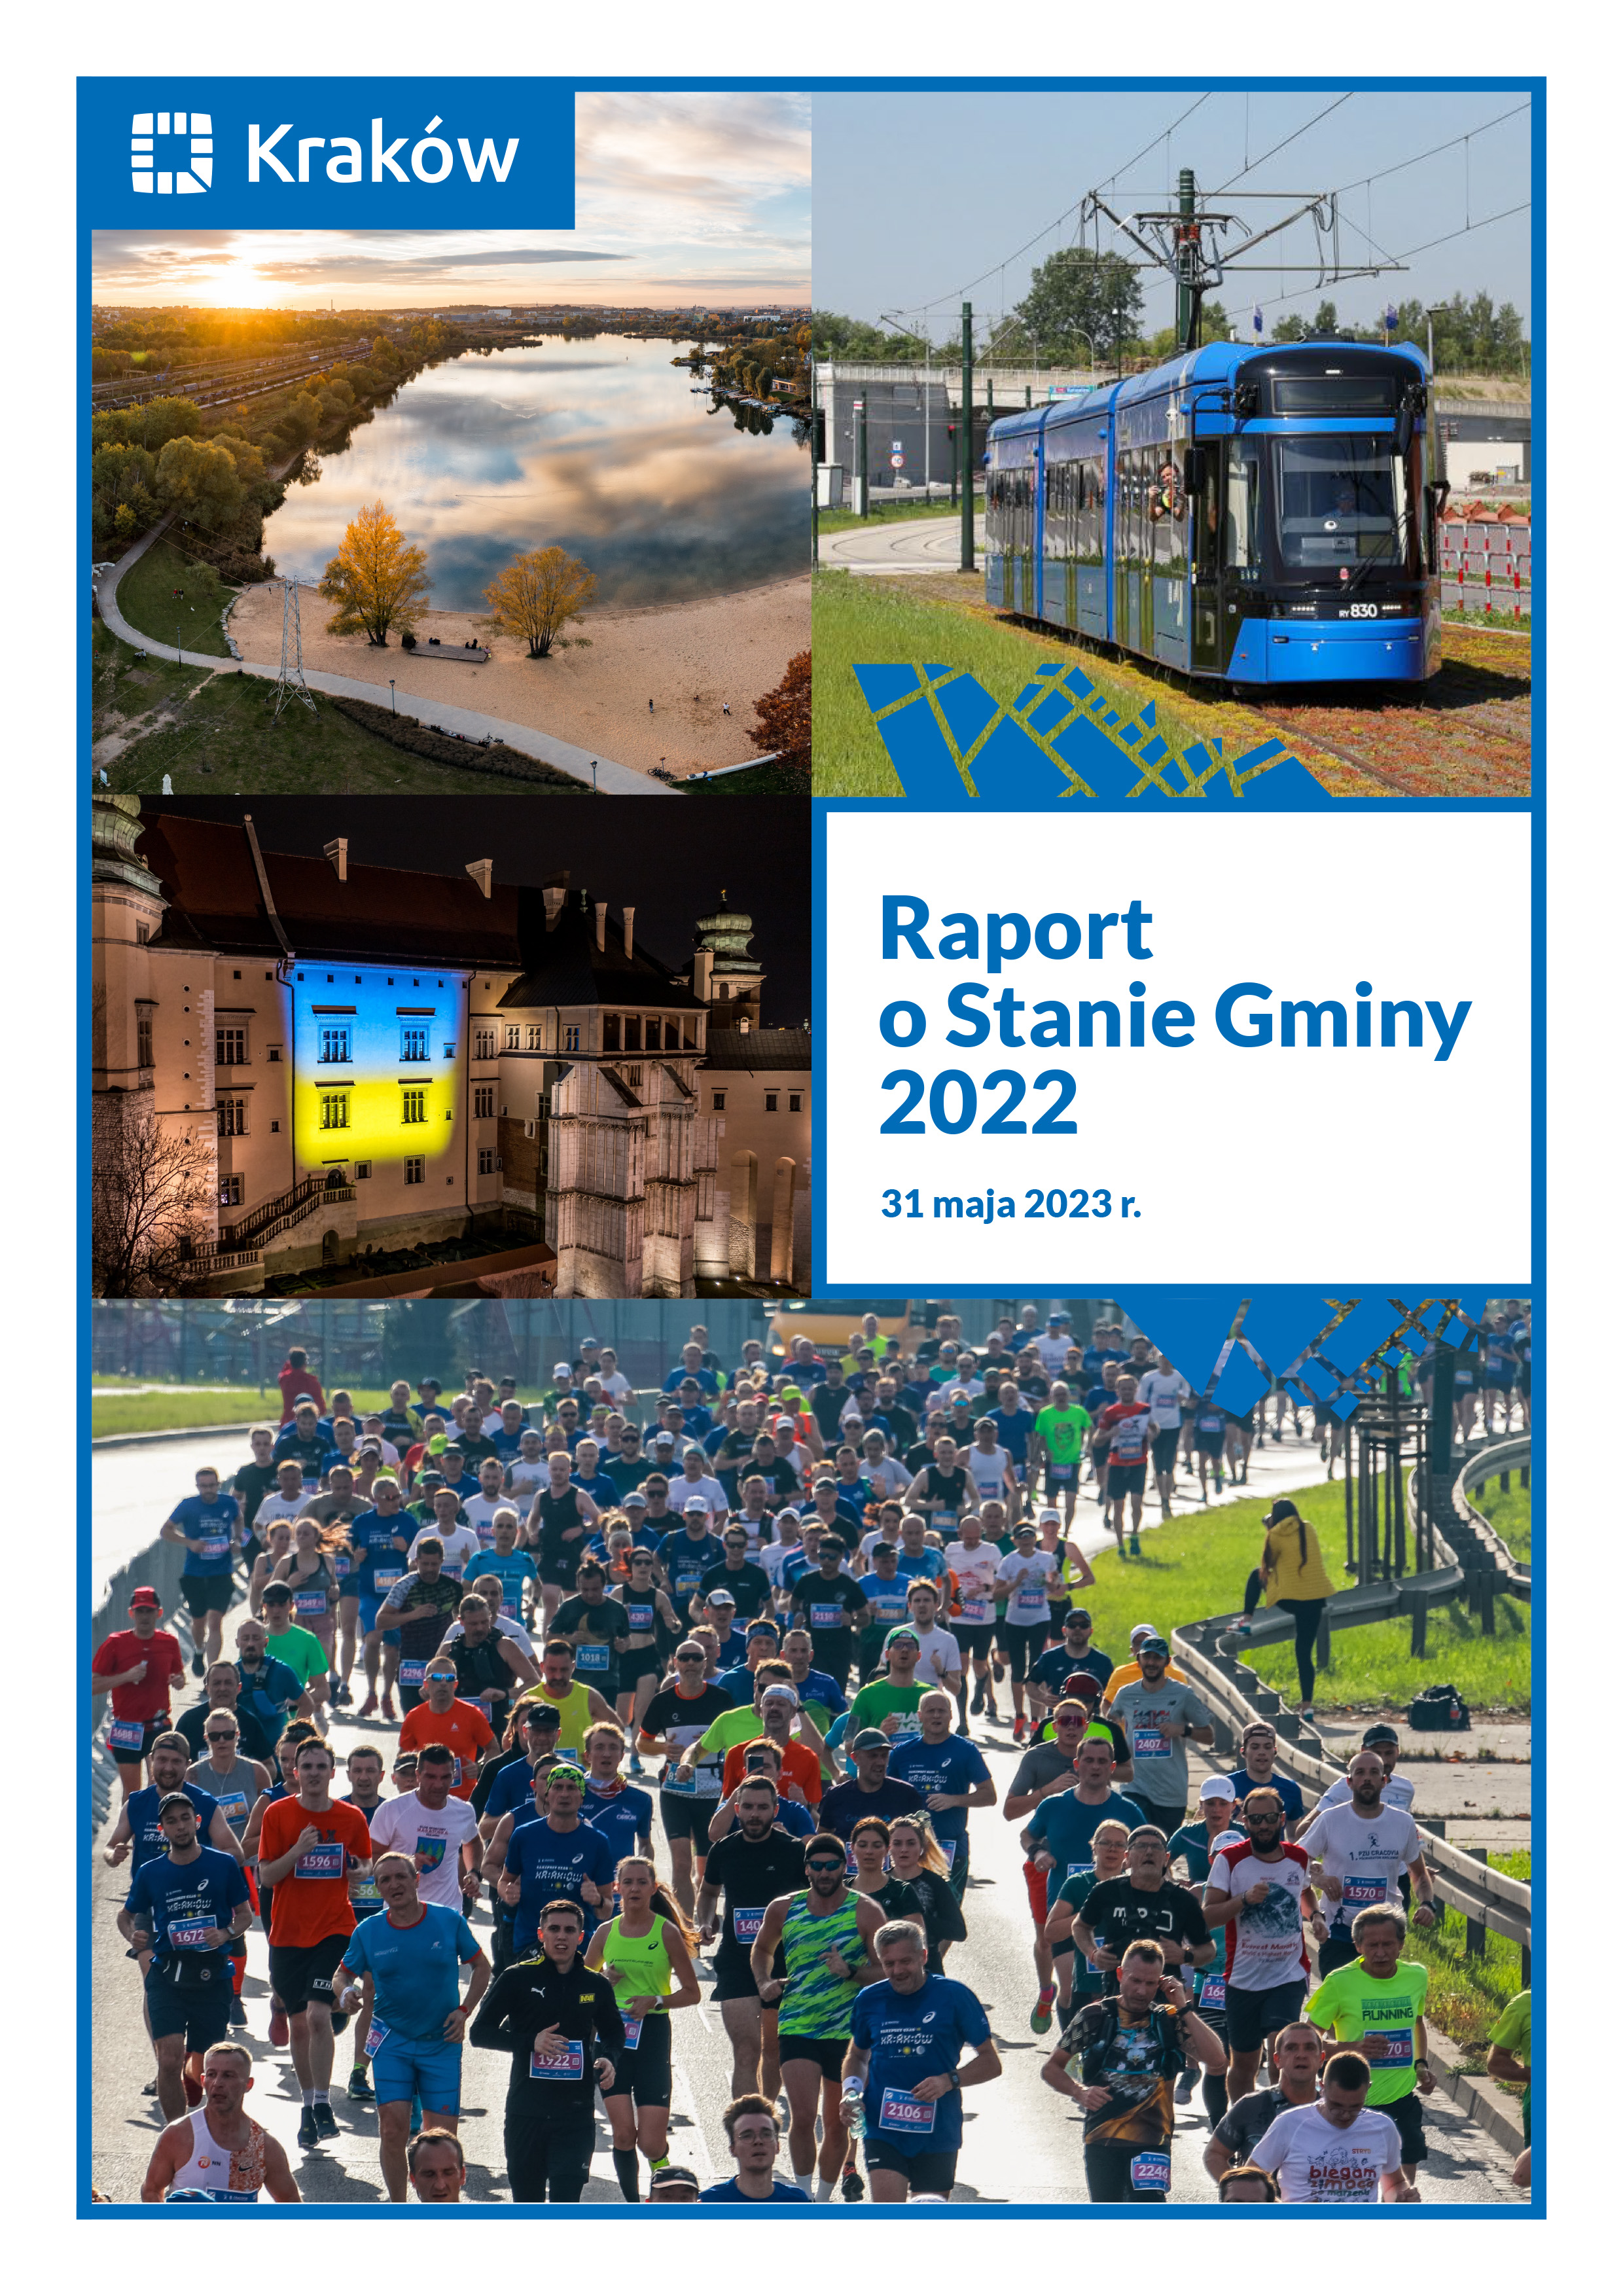 Okładka Raportu O Stanie Gminy za 2022 rok